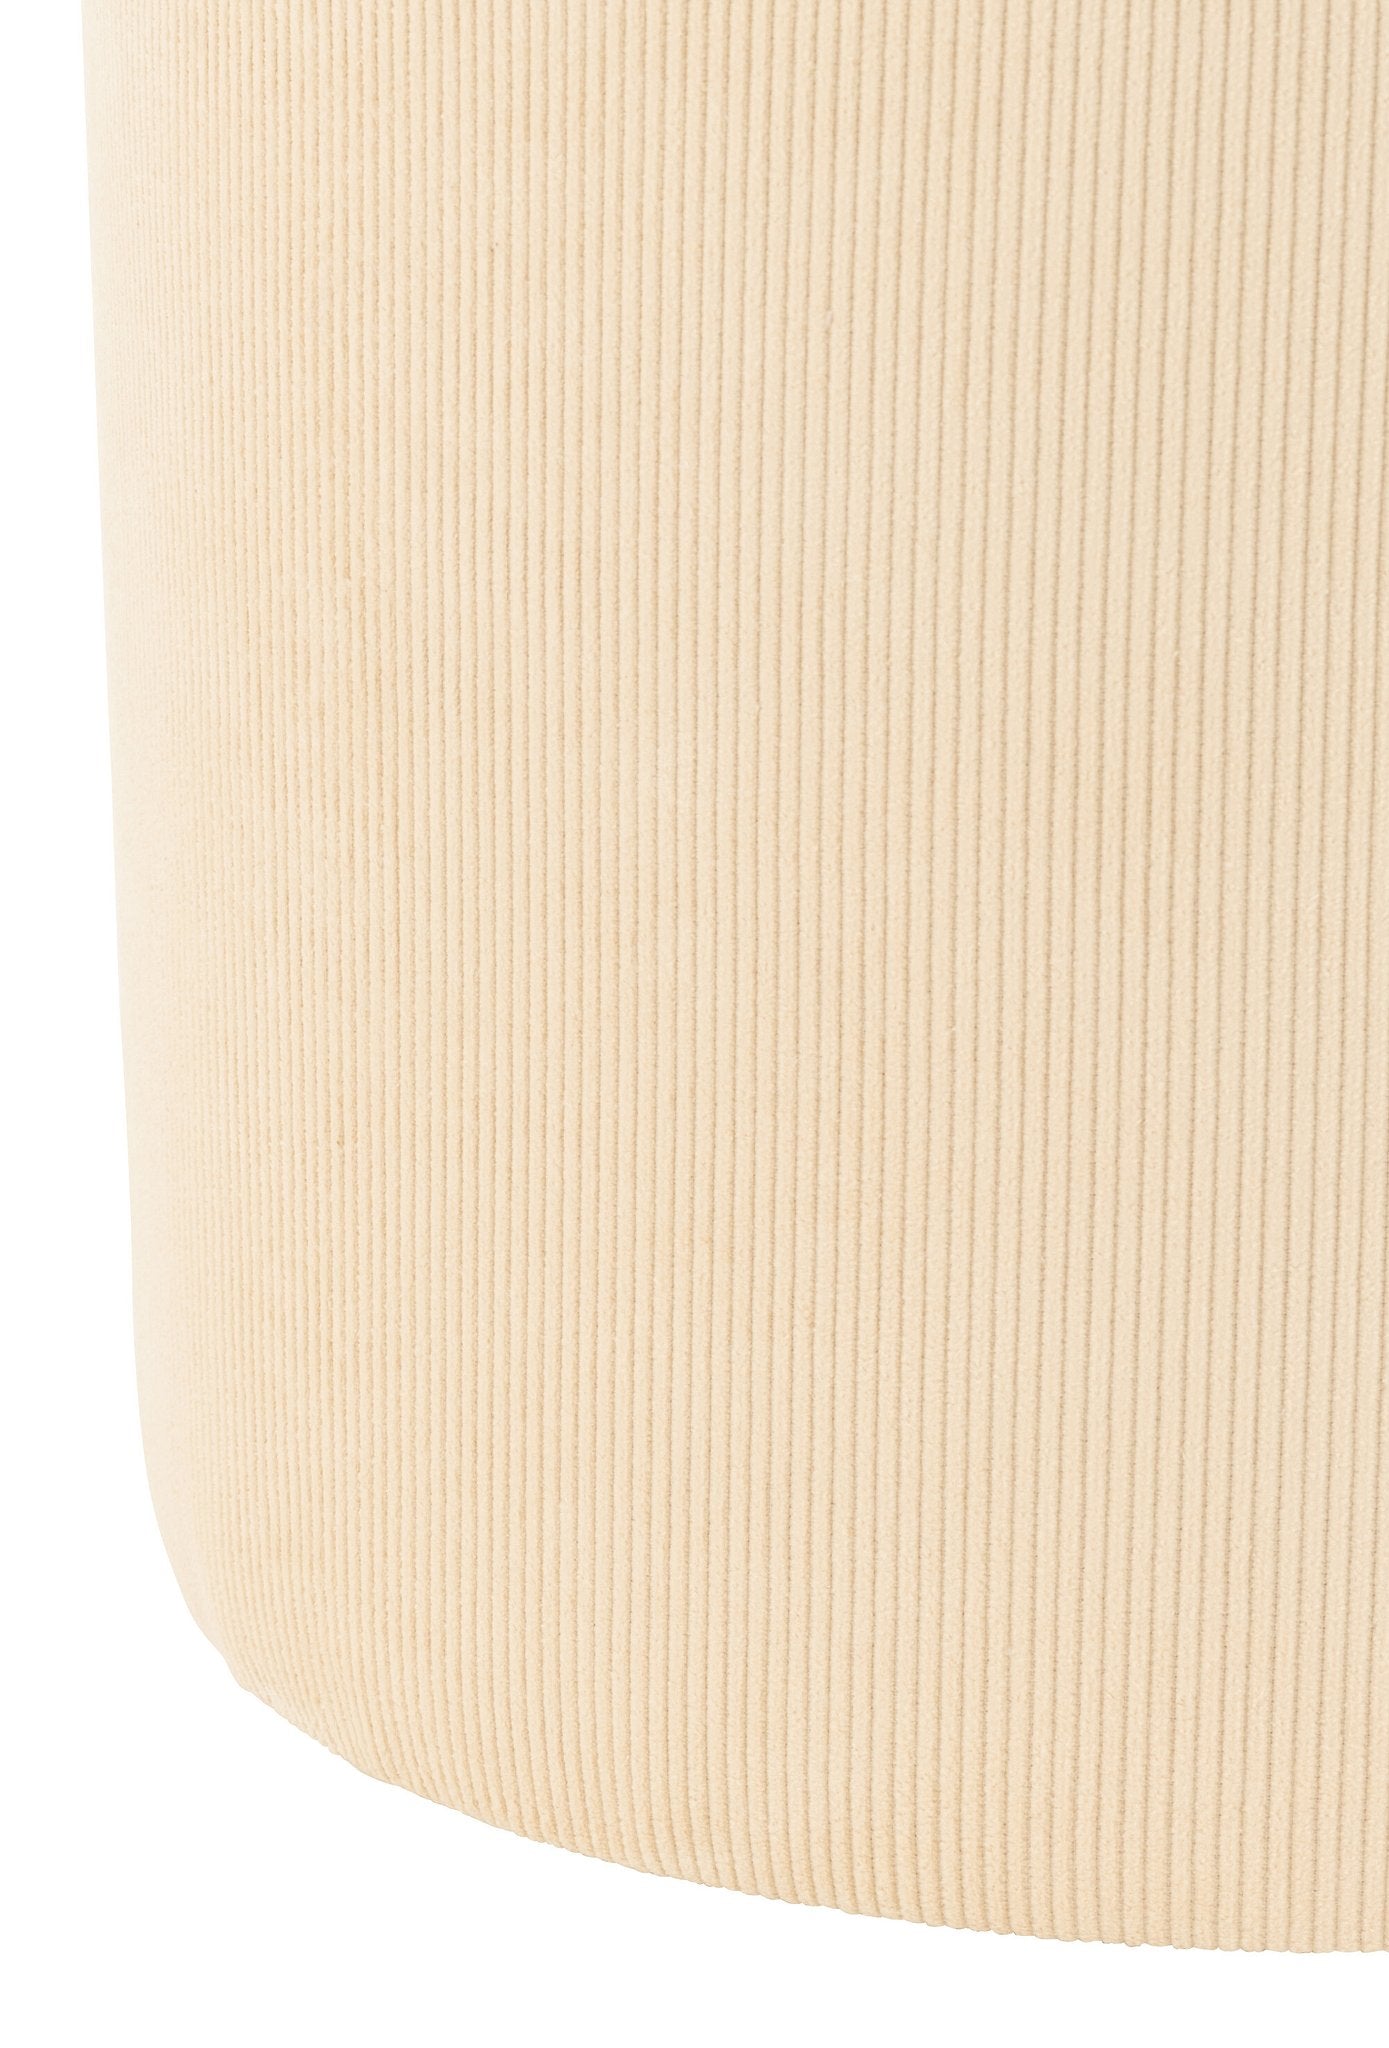 J-Line poef - textiel - creme - woonaccessoires